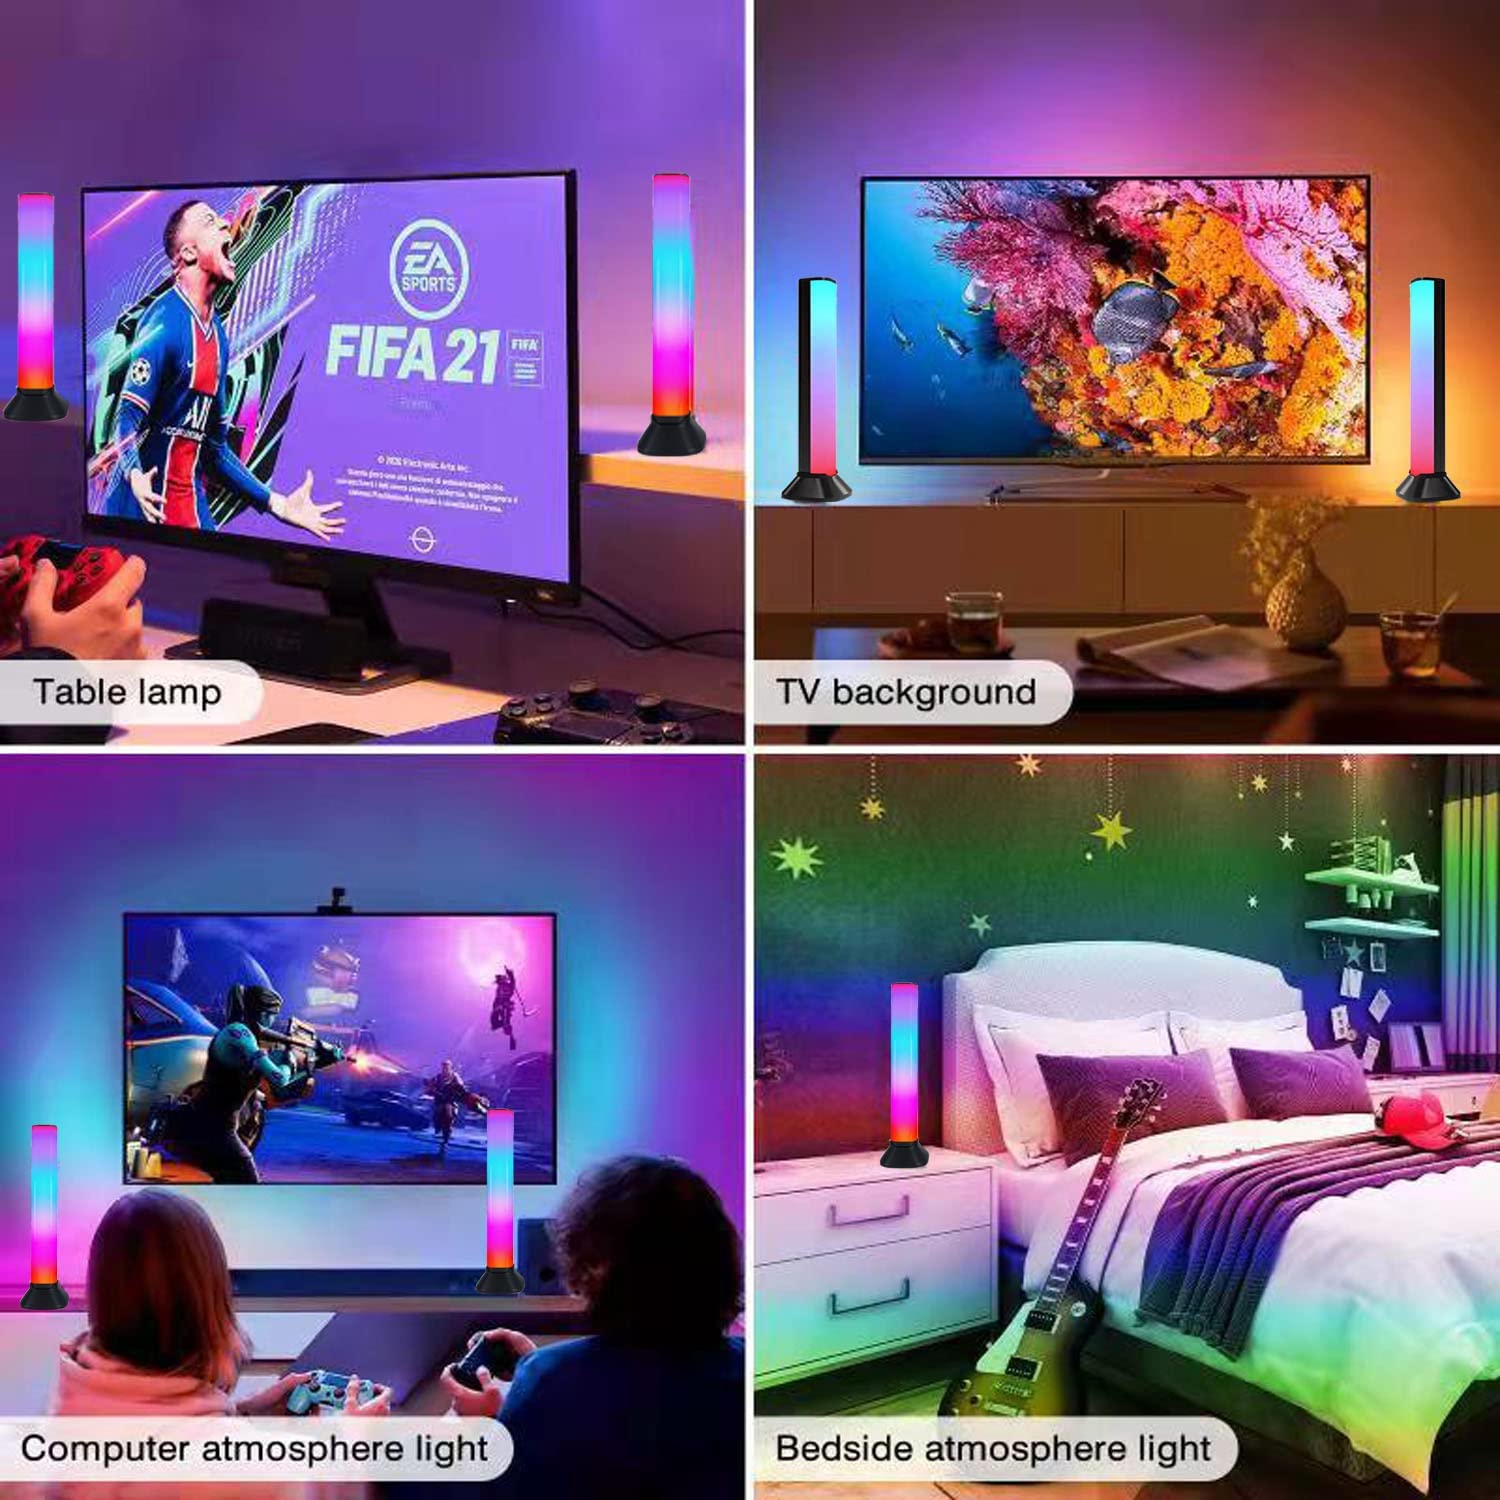 OTeedo Smart RGB Light Bar Barra LED Gaming Room Lampada Luci TV  Retroilluminazione Intelligente Sincronizzata Con Diversi Effetti Di  Illuminazione E Modalità Musicali Ideale Per Il Gaming Film E PC :  